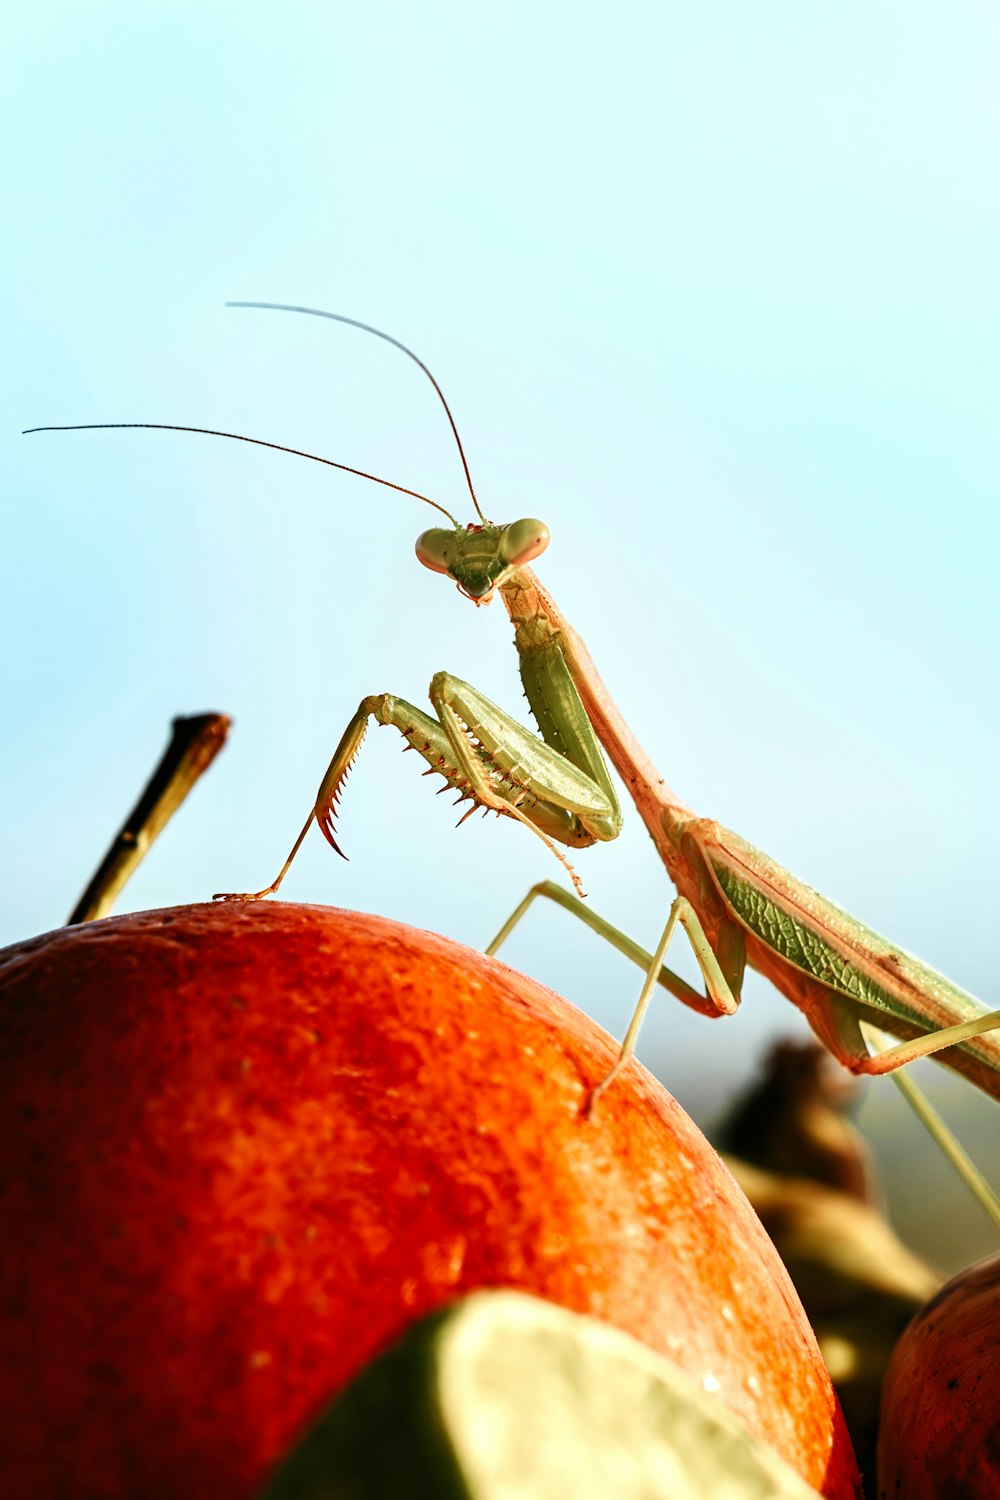 a close up of a praying mantissa on an apple